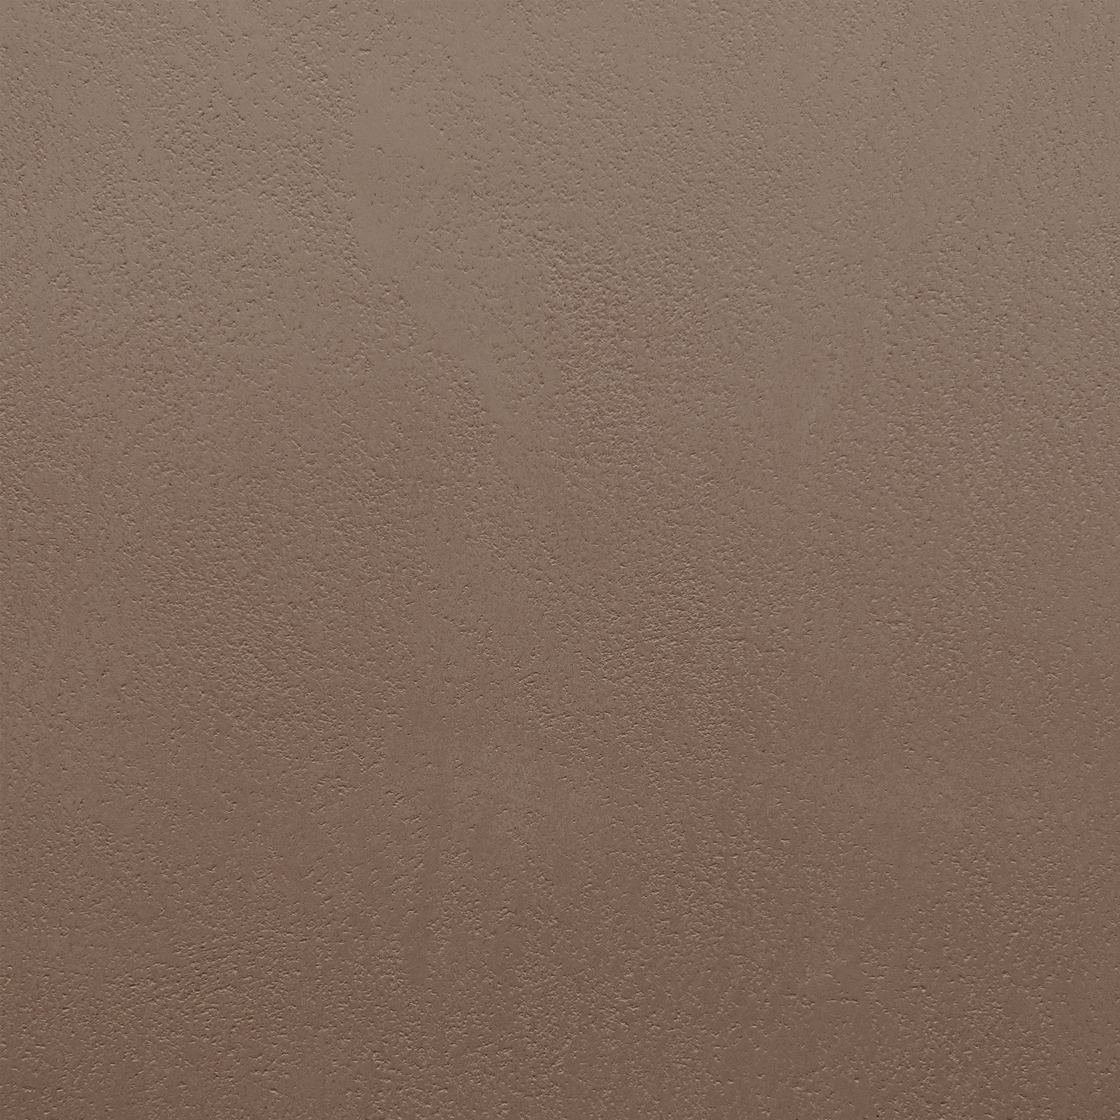 Armourcoat leatherstone exterior polished plaster finish - 33